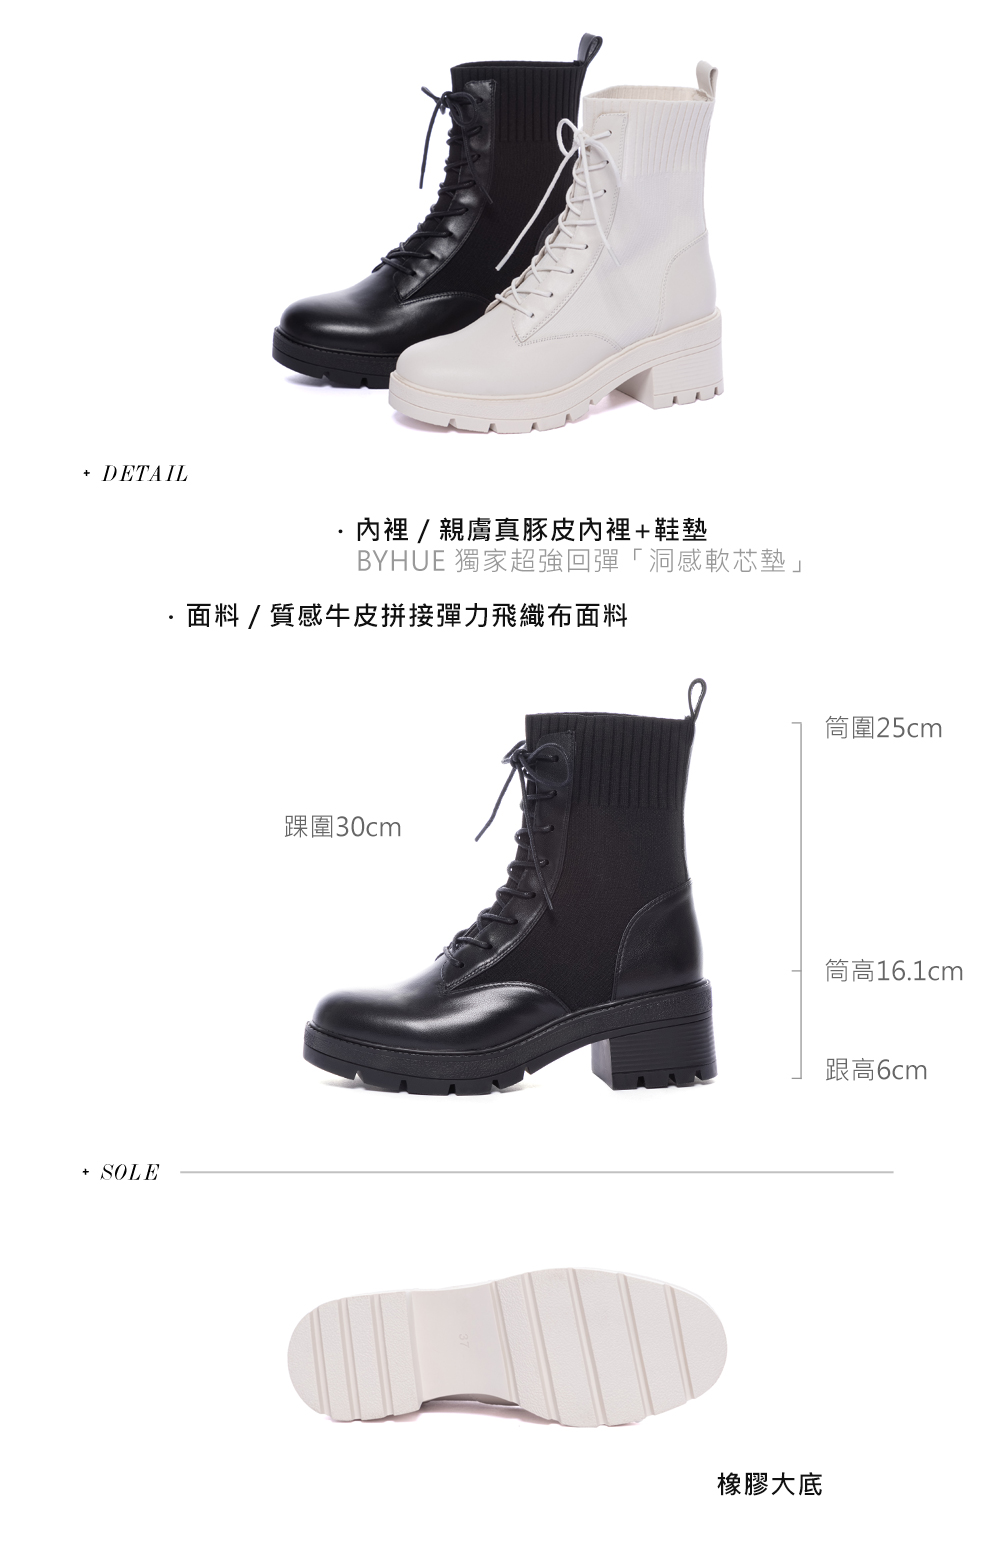 BYHUE 韓系日常牛皮拼接彈力綁帶軟芯高跟短靴(黑) 推薦